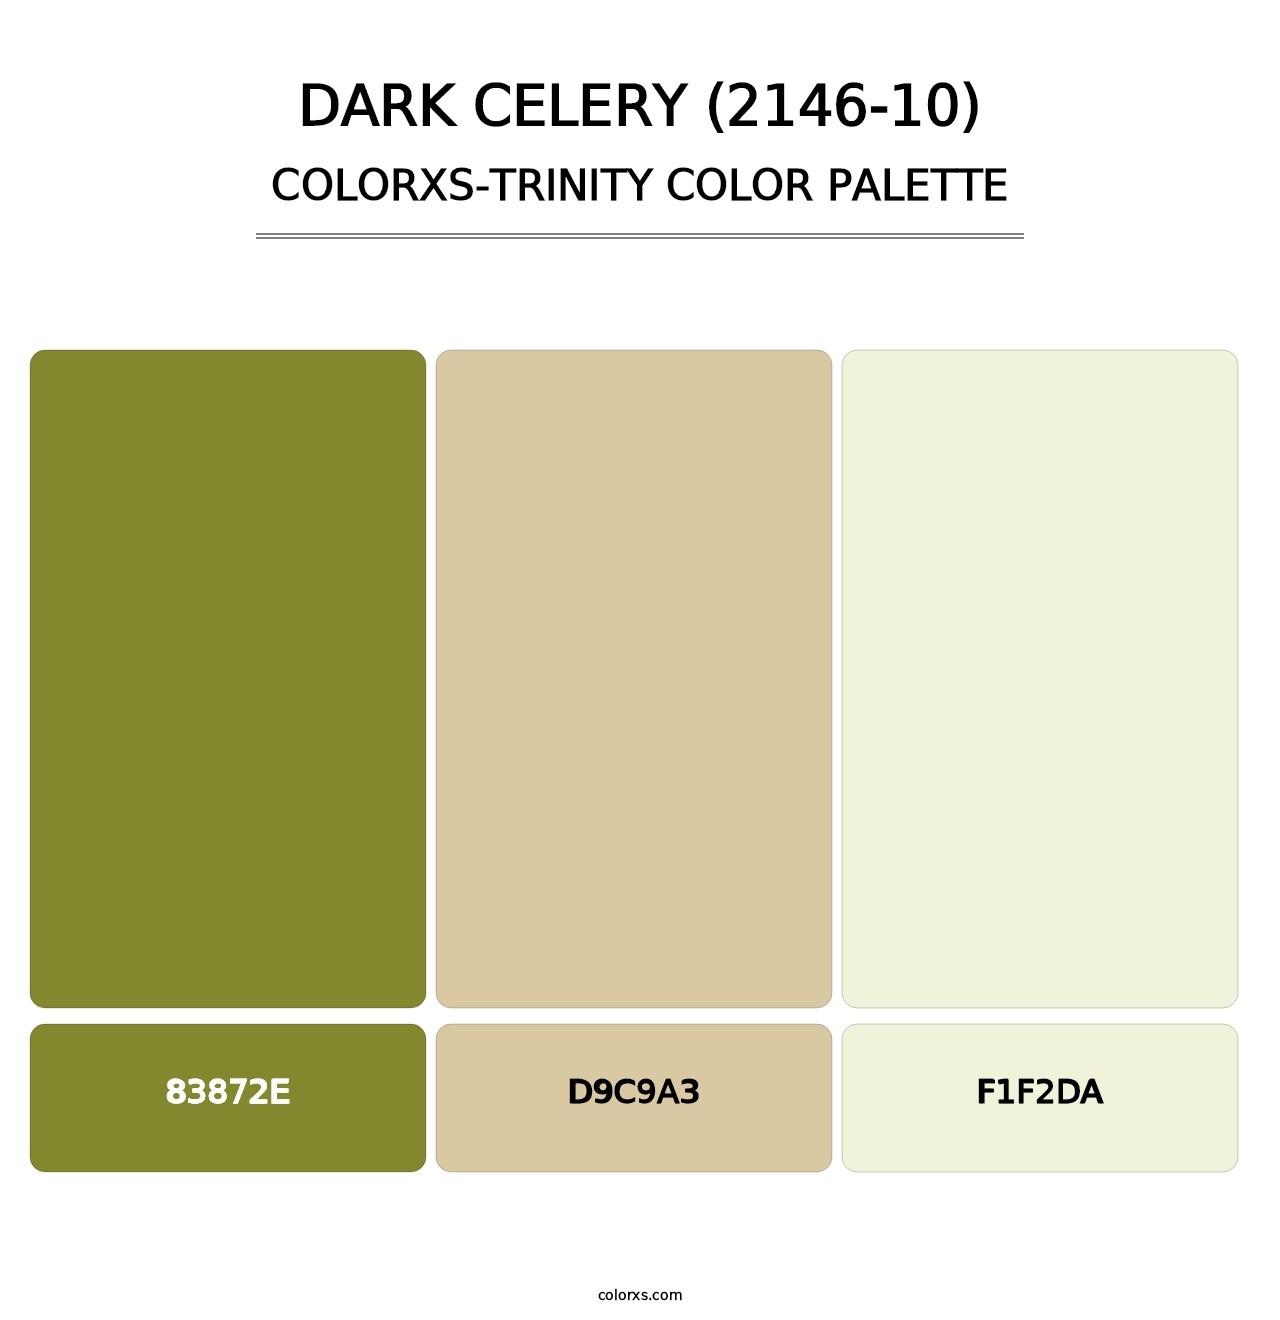 Dark Celery (2146-10) - Colorxs Trinity Palette